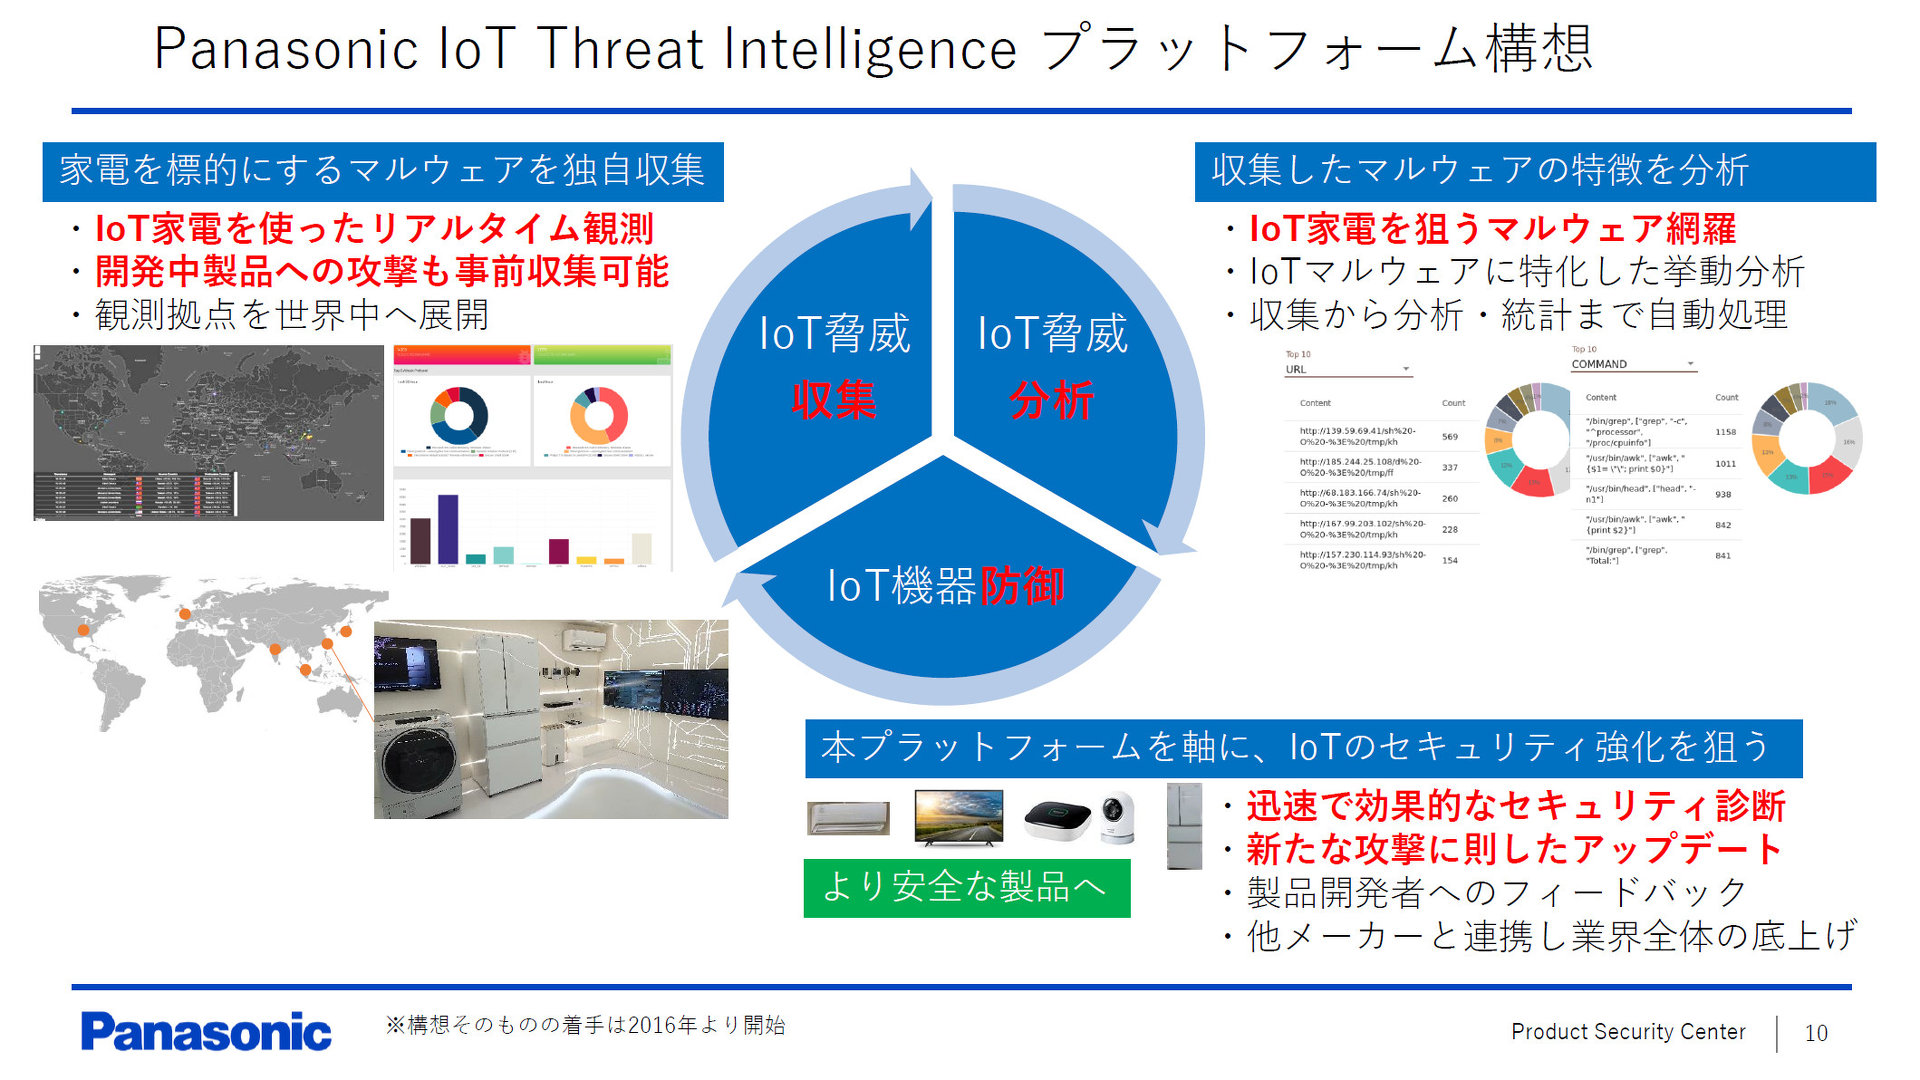  Panasonic IoT Threat Intelligence vbgtH[̊TviNbNŊgj oTFpi\jbN